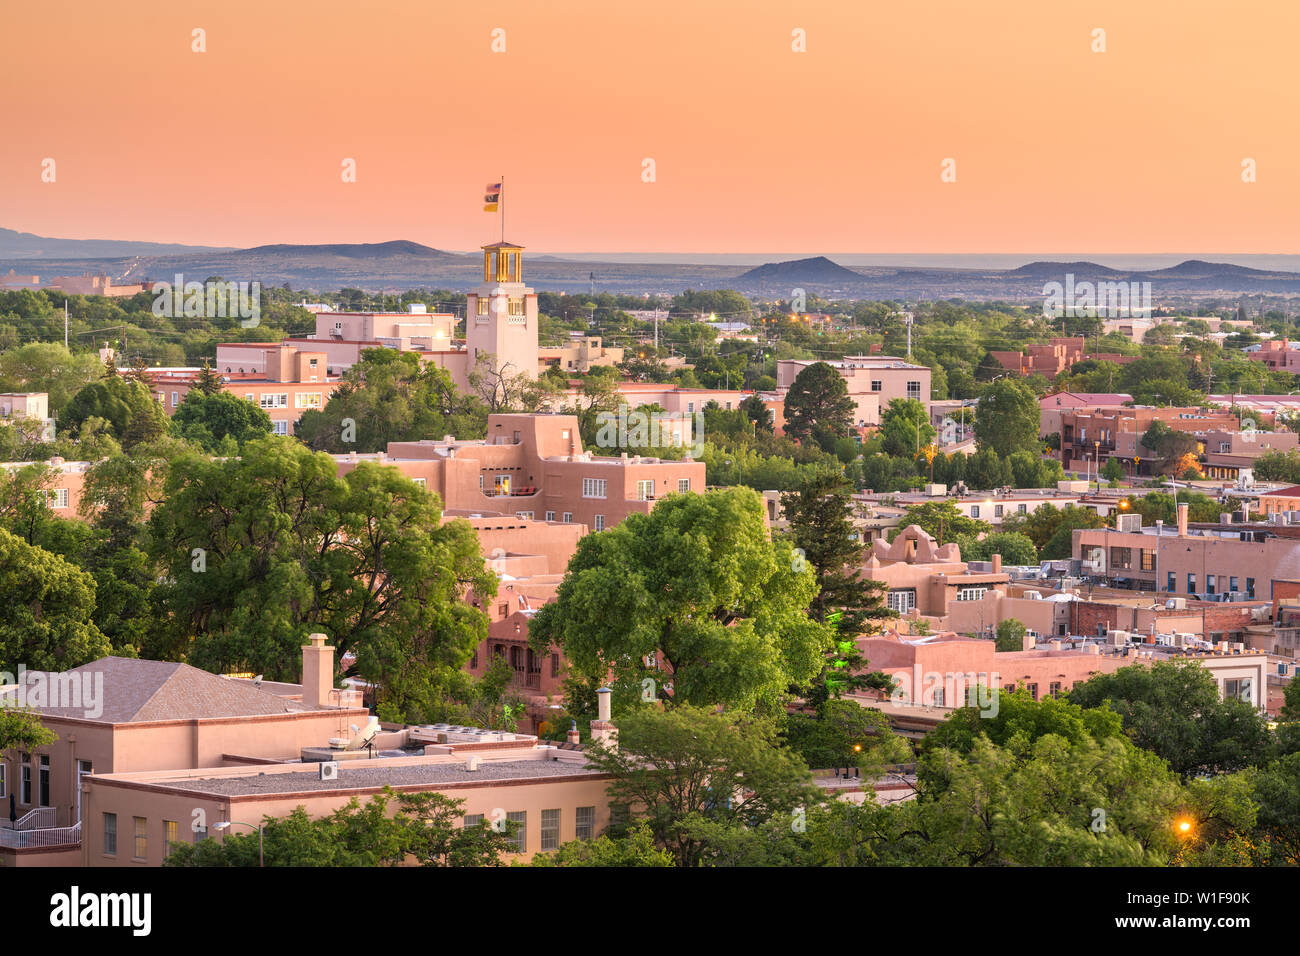 Santa Fe, New Mexico, USA downtown skyline at dusk. Stock Photo